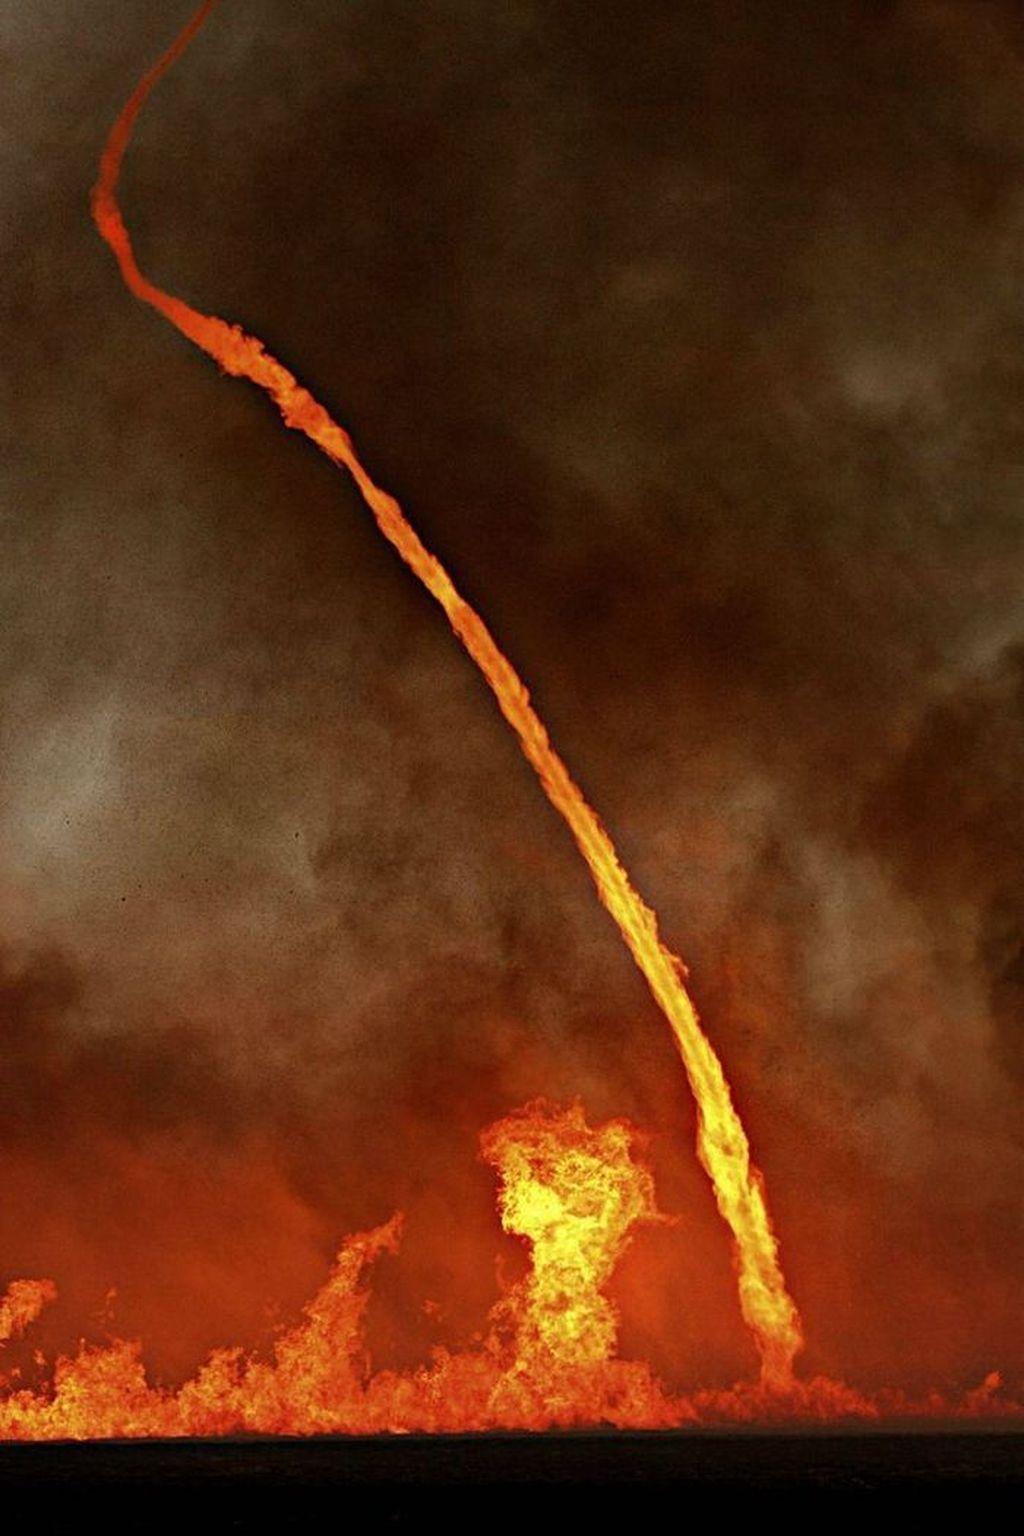 Tornado api yang kerap disebut sebagai fire devil ini bisa memiliki tinggi hingga 300 meter, dan Amerika Serikat selalu kedatangan tornado api setinggi itu tiap tahunnya. (Foto: Internet)